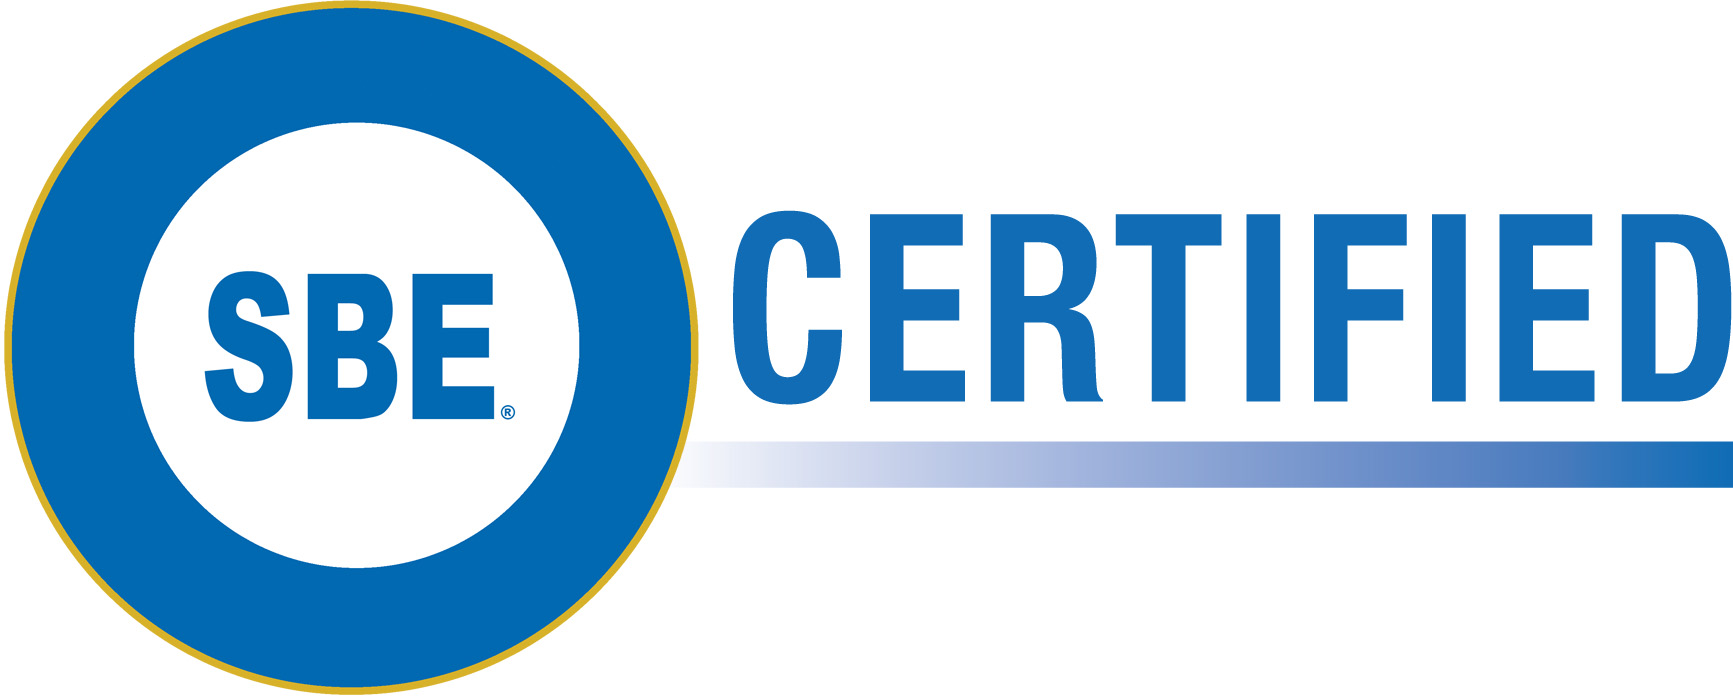 SBE Certified Logo